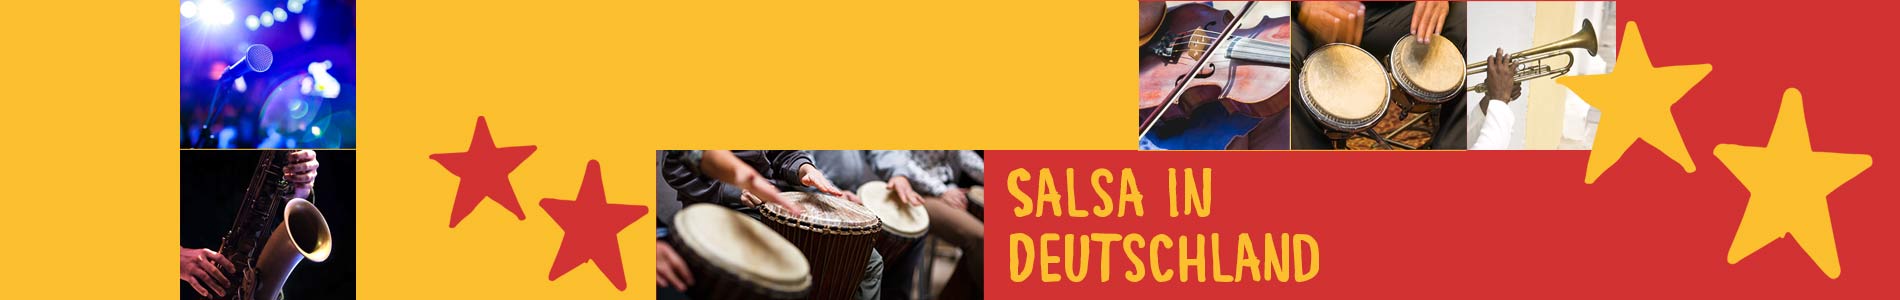 Salsa in Borrentin – Salsa lernen und tanzen, Tanzkurse, Partys, Veranstaltungen